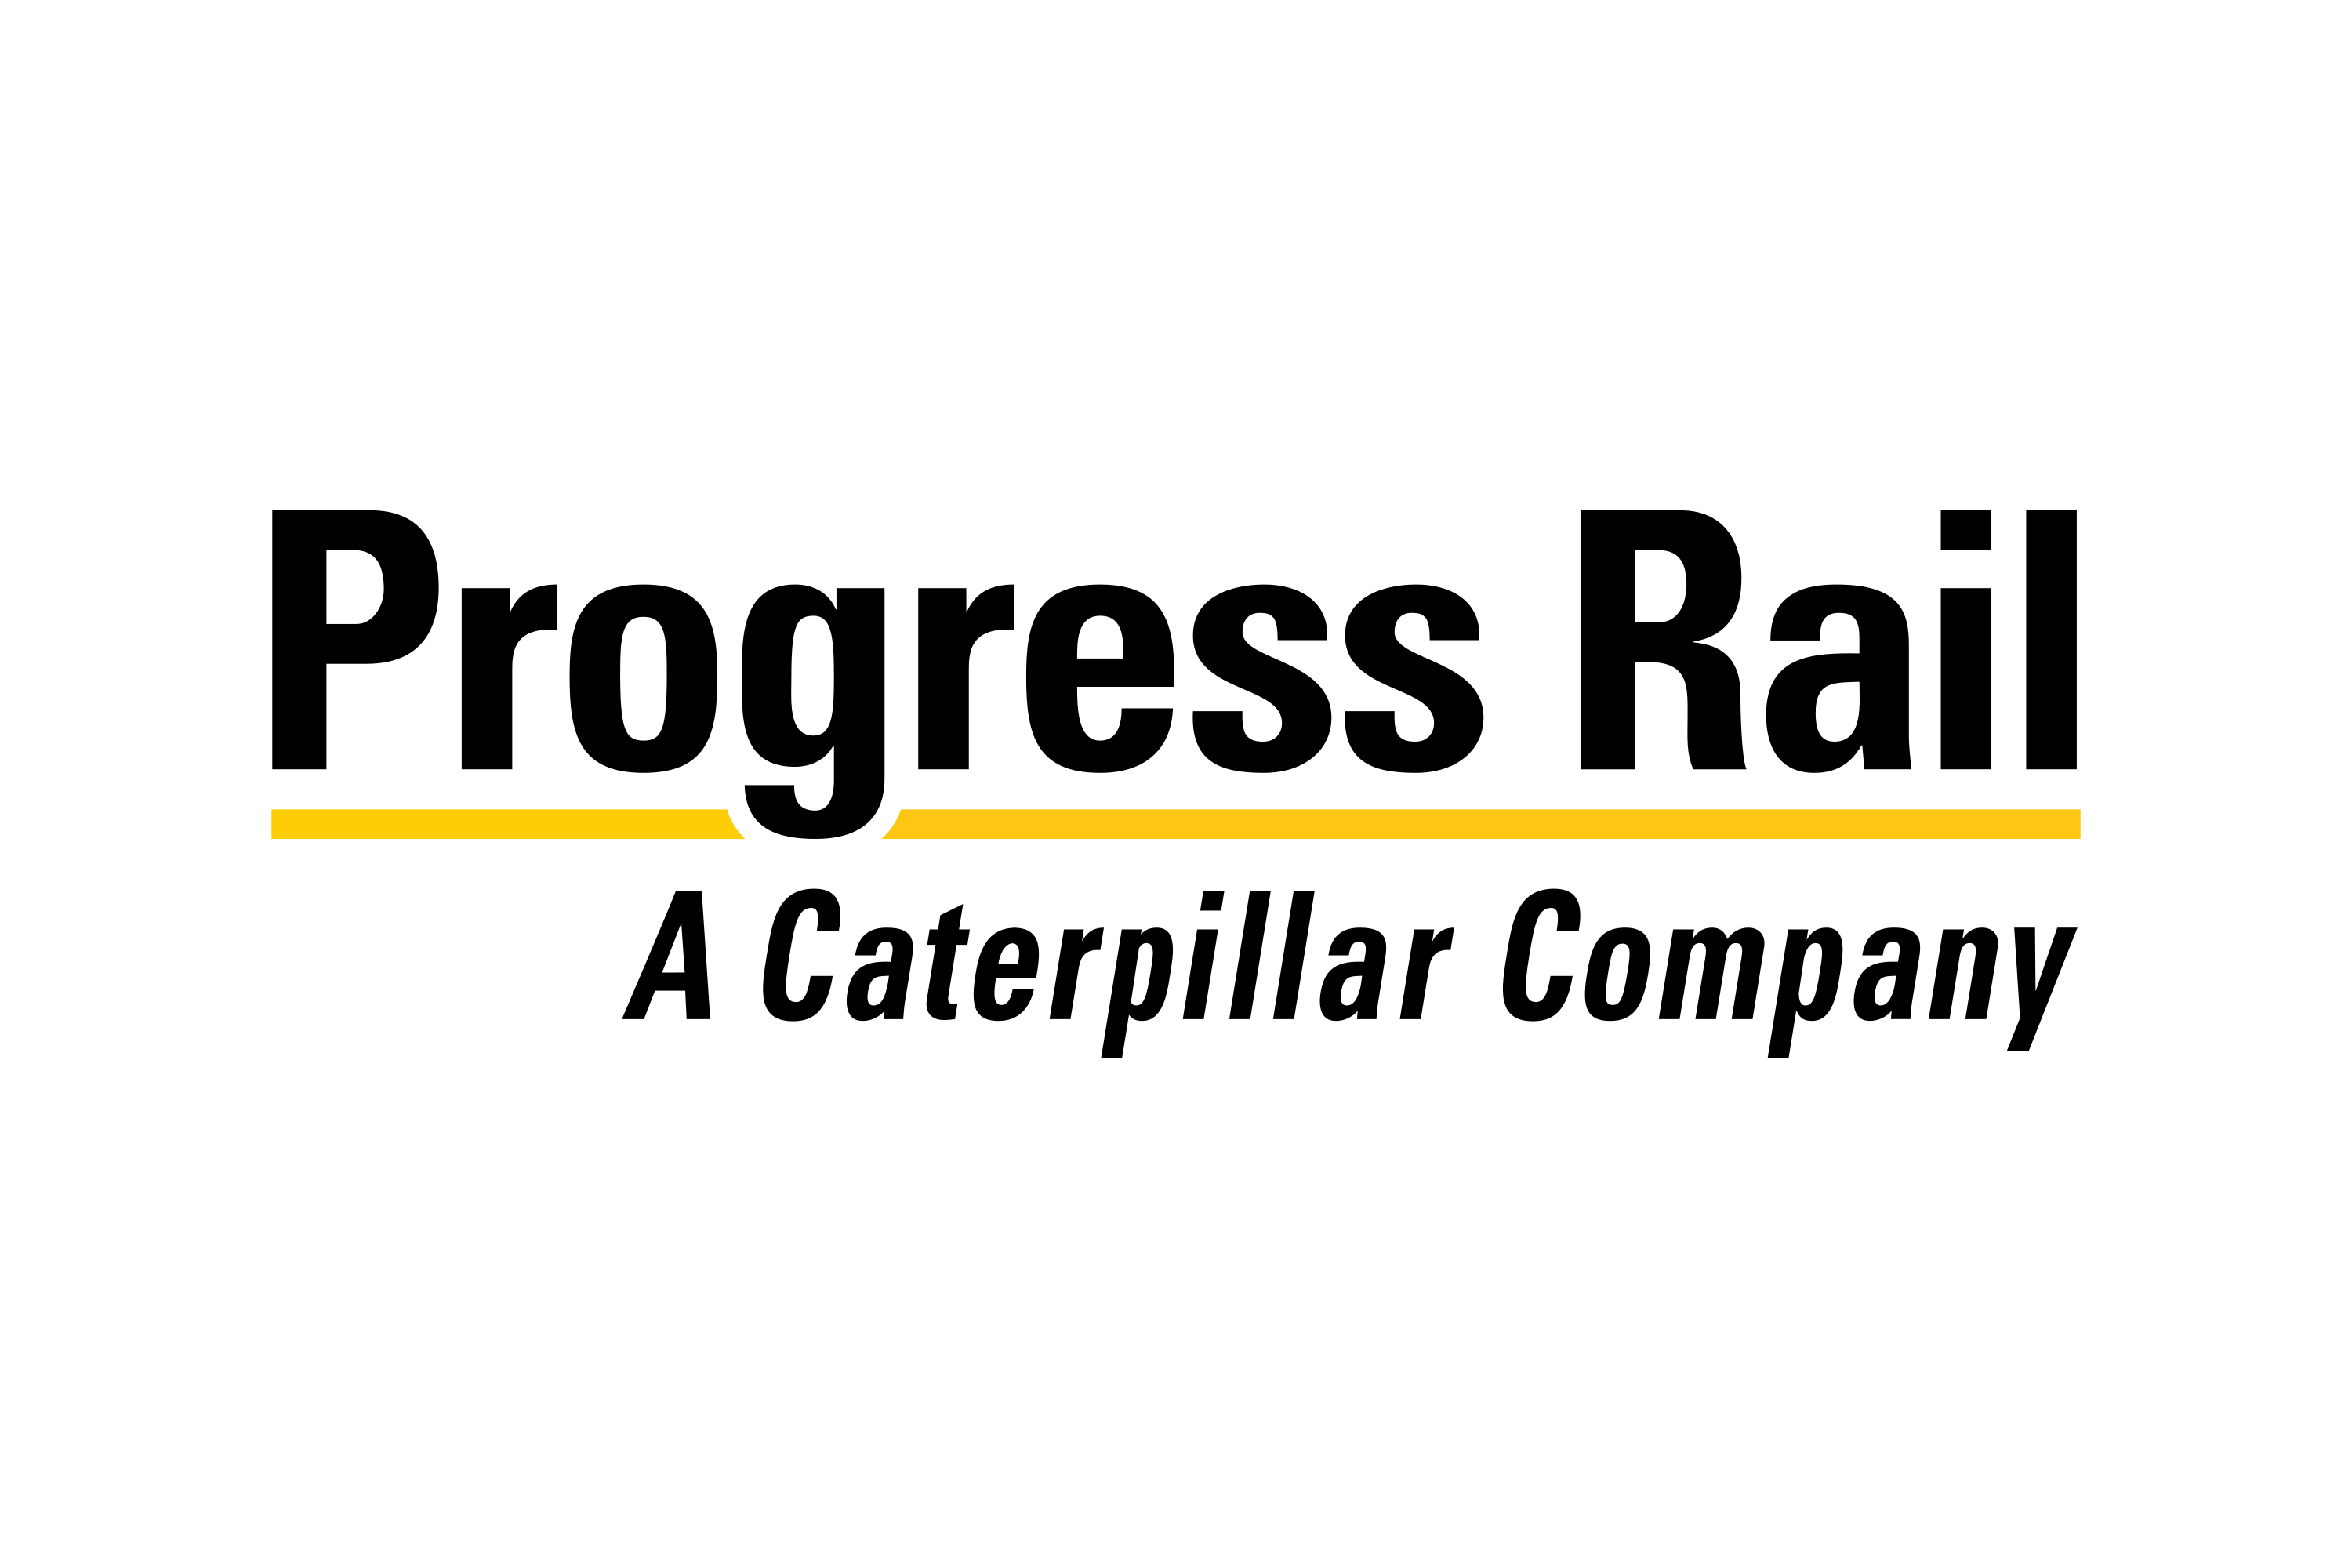 PROGRESS RAIL